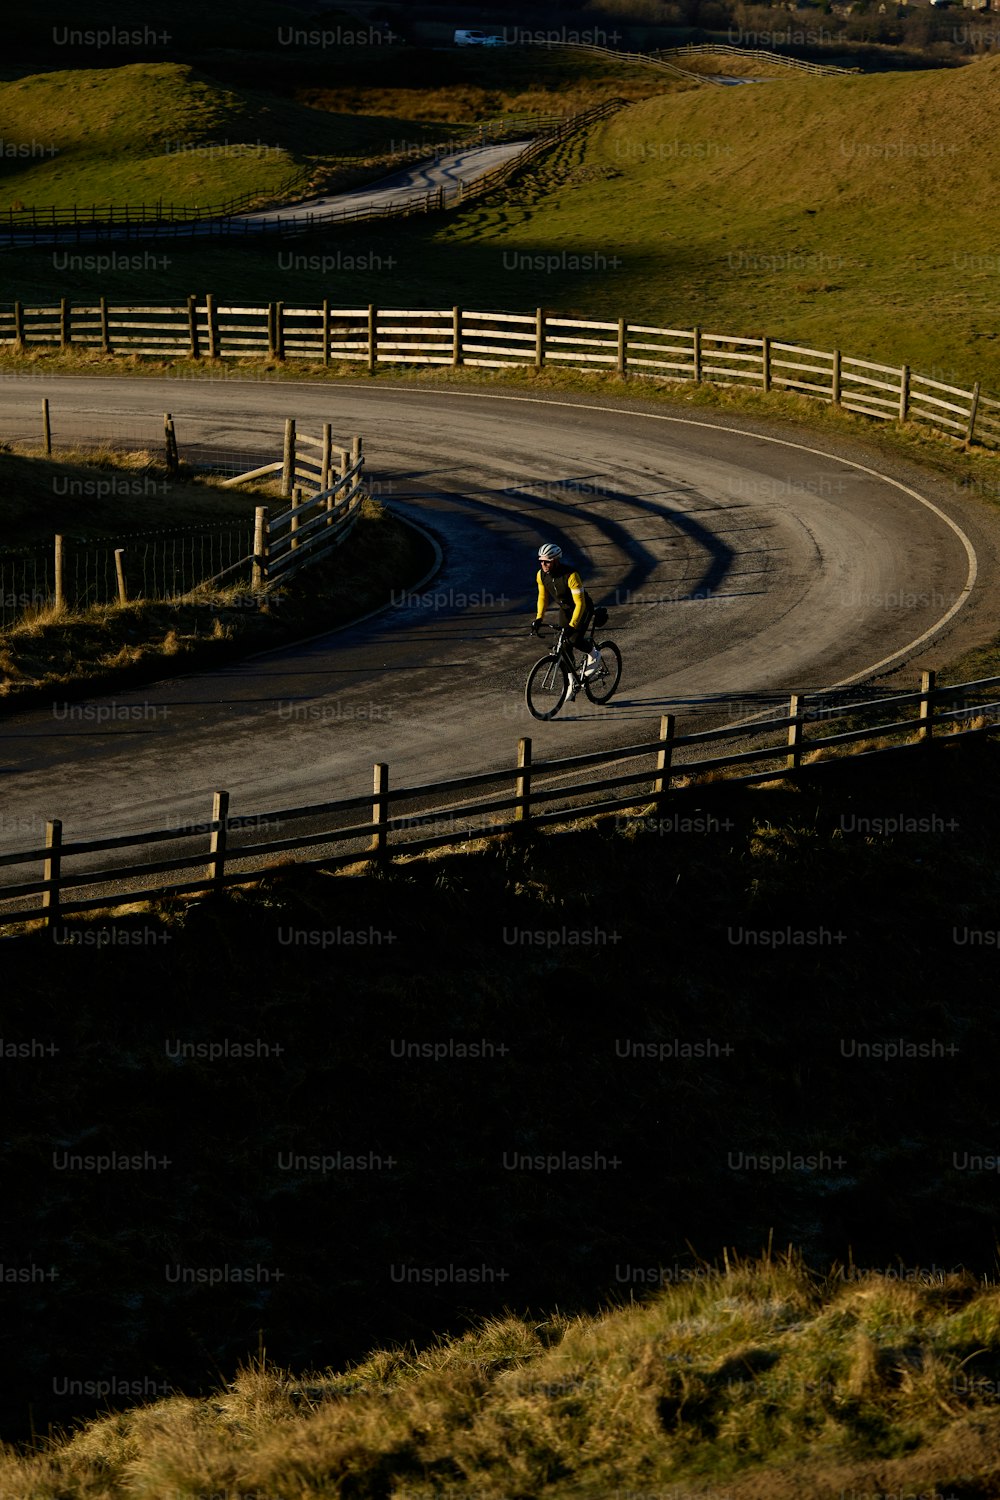 Un hombre montando en bicicleta por una carretera con curvas